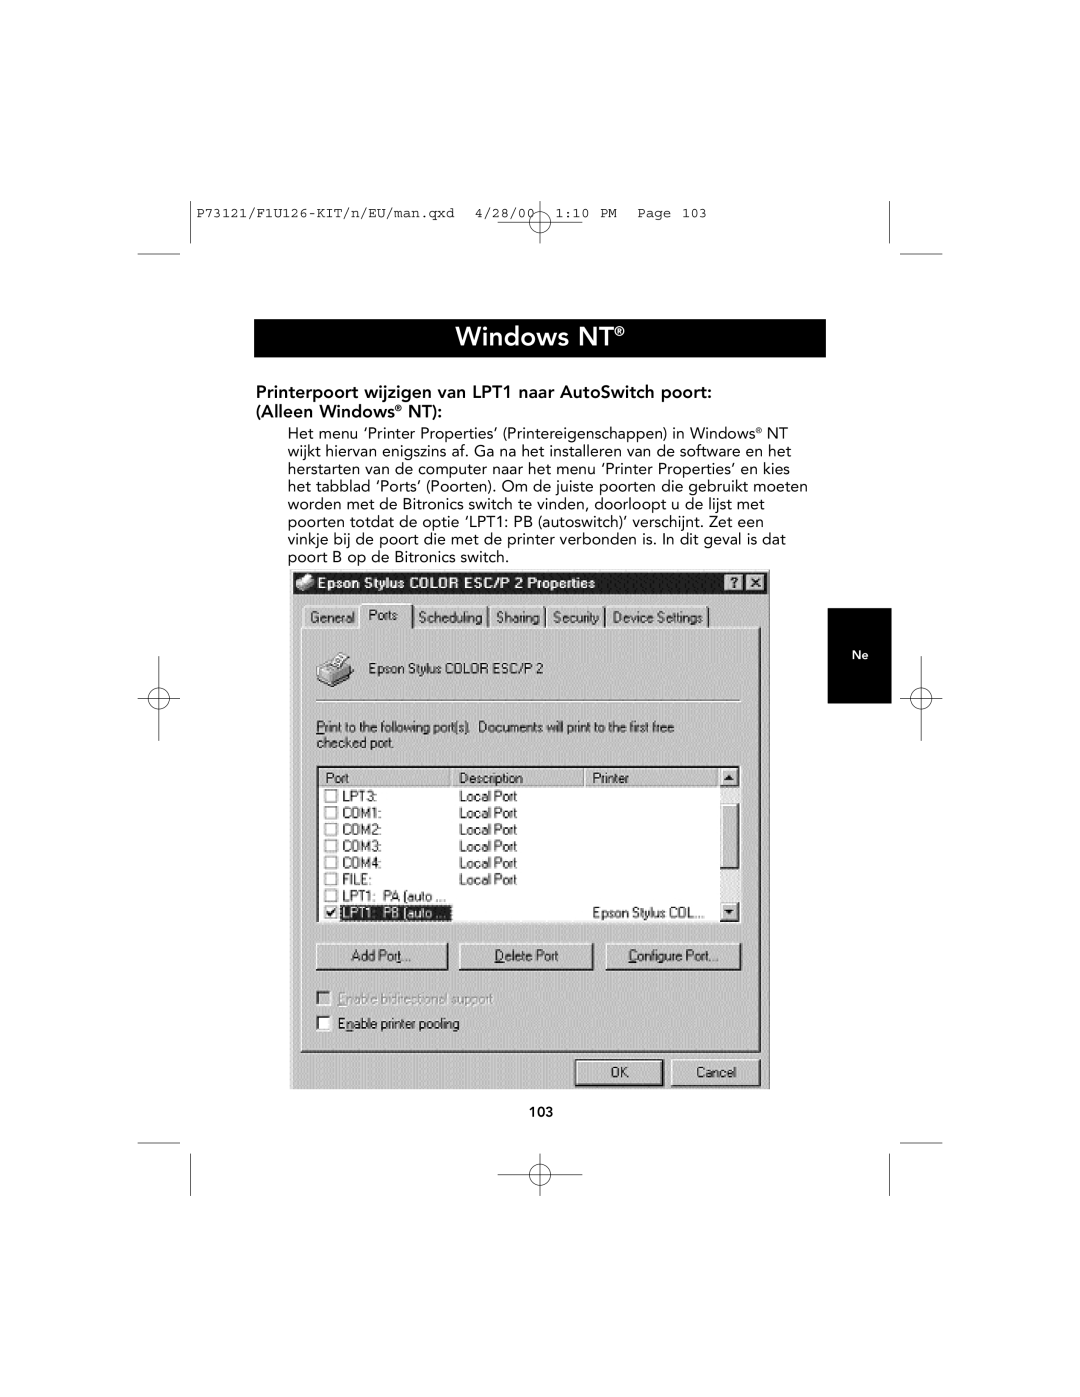 Belkin P73121, F1U126-KIT user manual Windows NT 